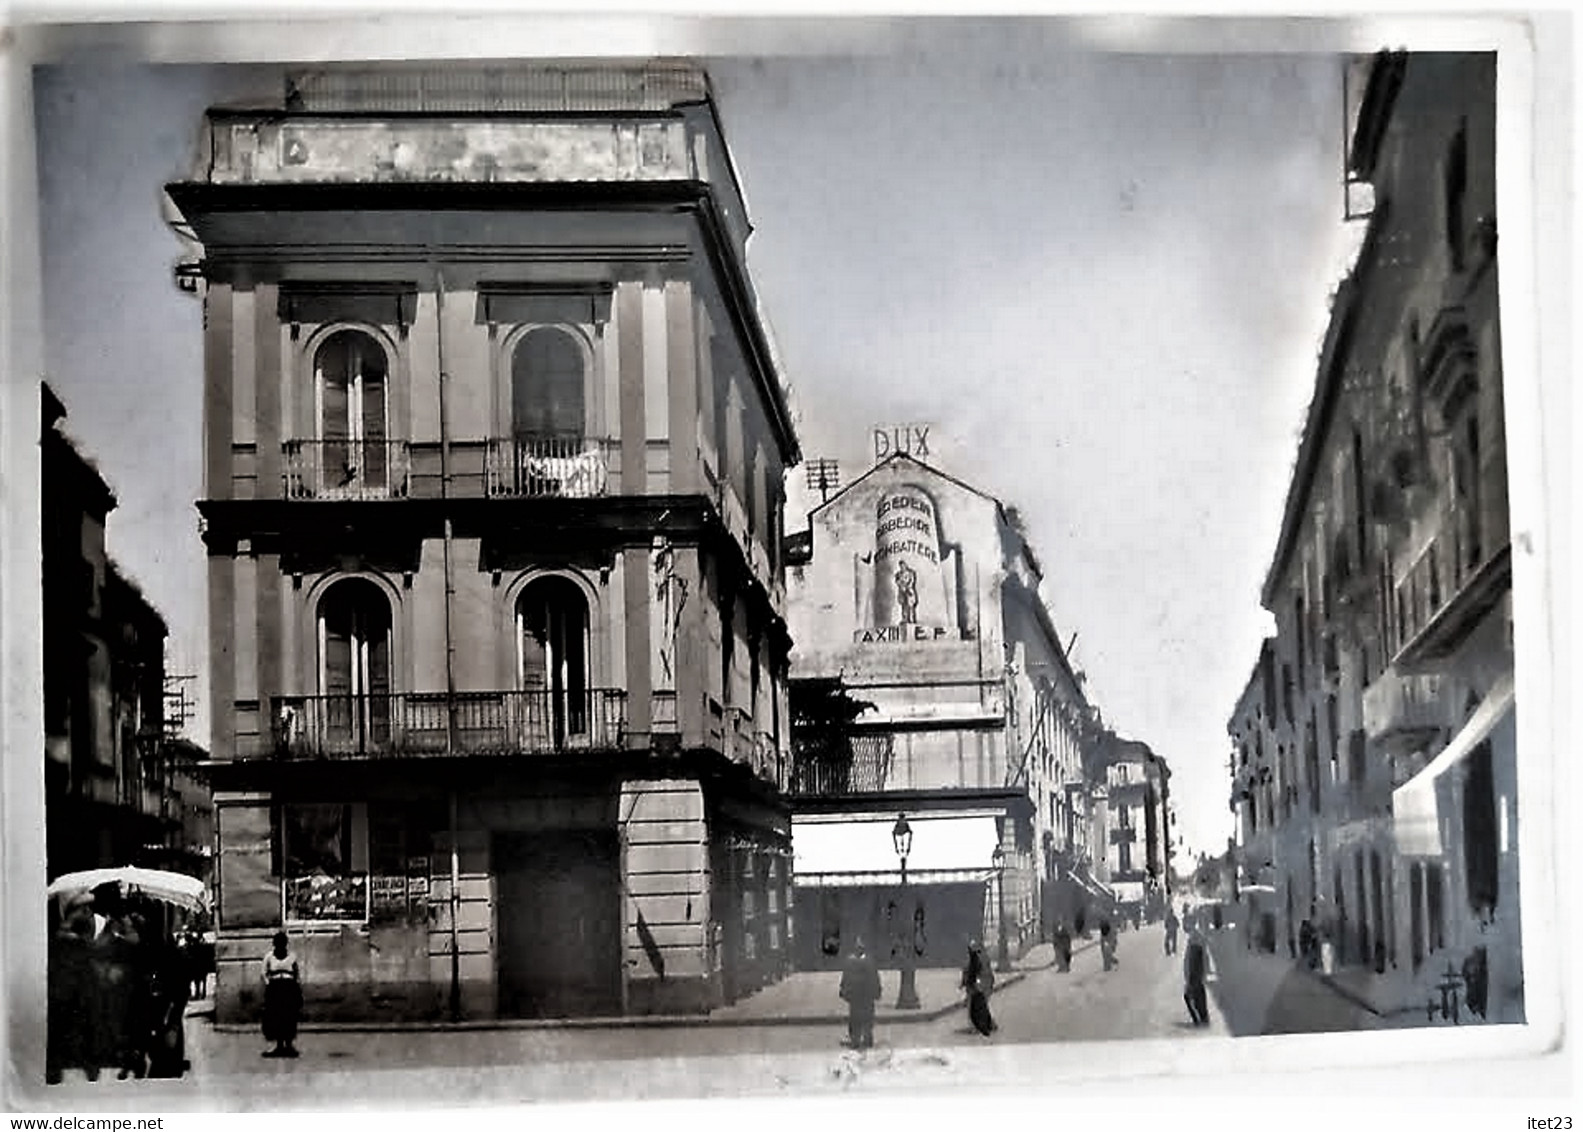 AVERSA-VIA ROMA-CIRCOLO LITTORIO- BOZZA FOTOGRAFICA CARTA LUCIDA-UNICA 1935 - Aversa